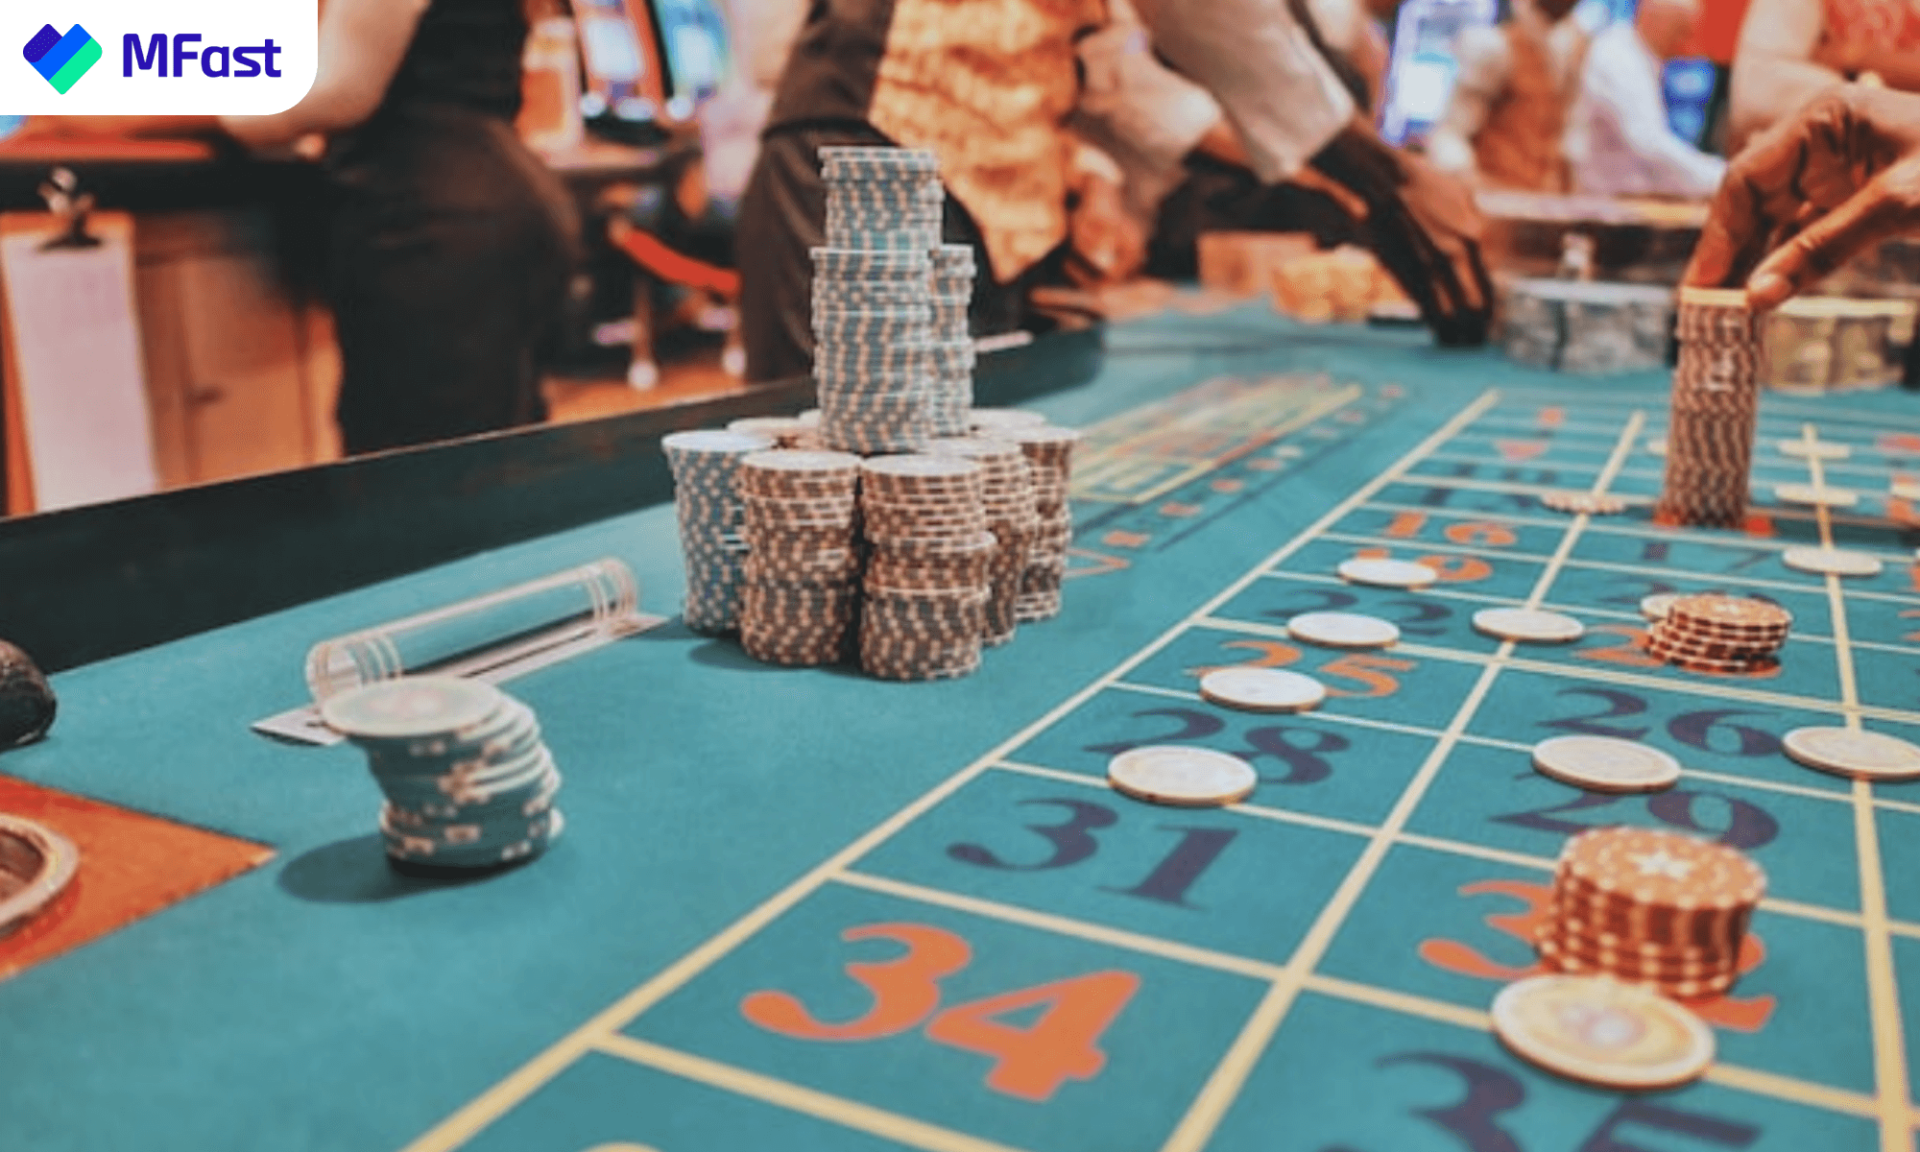 Betting/Gambling là hình thức MMO không hợp pháp